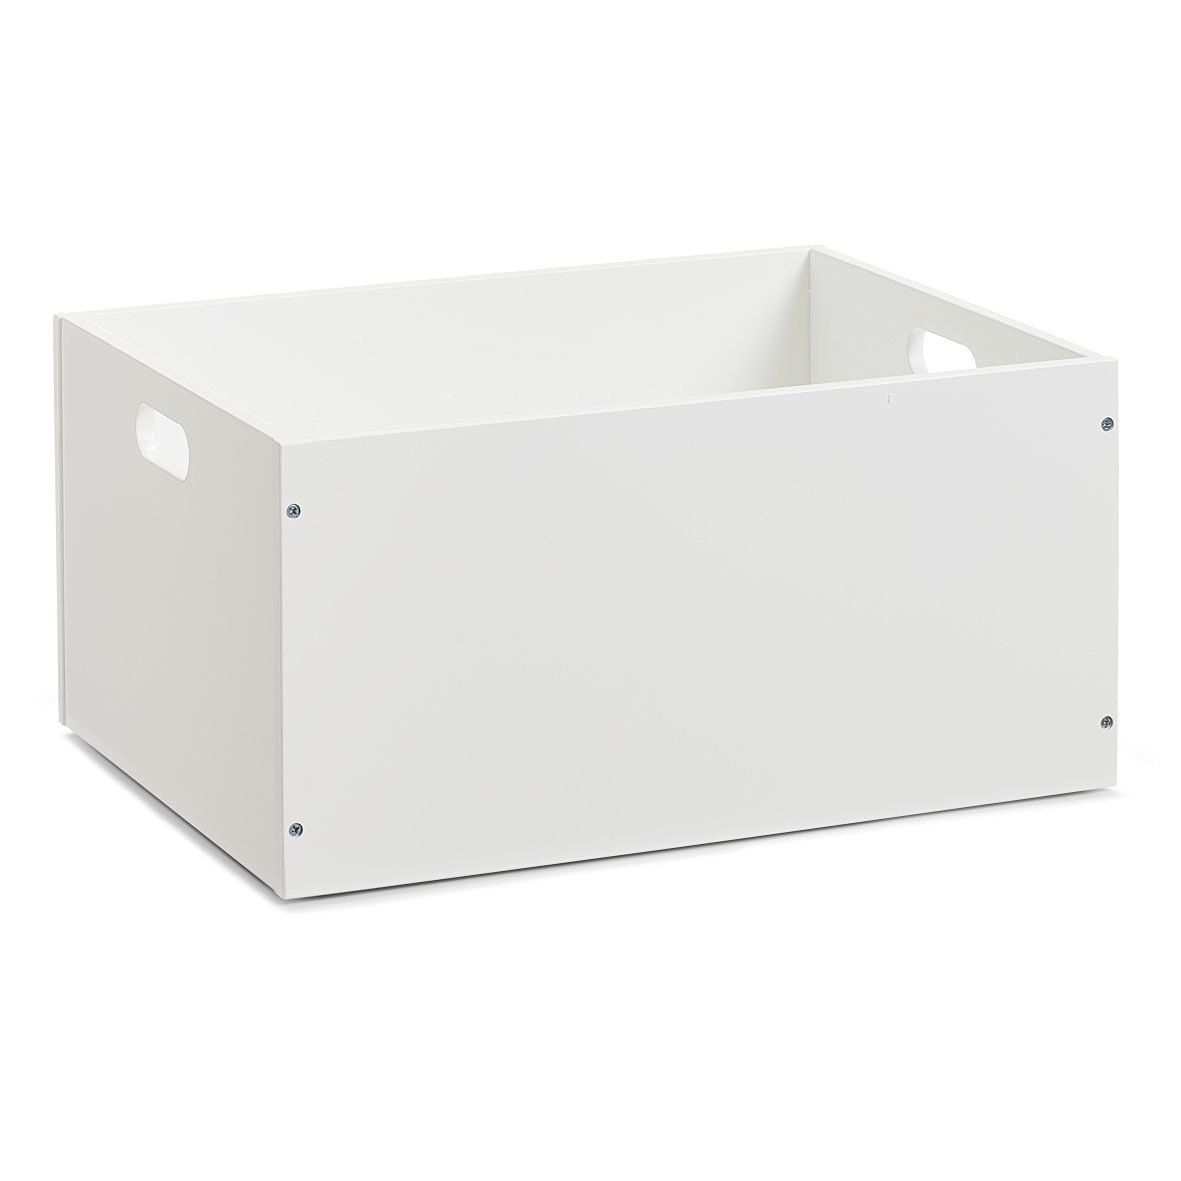 Úložný box na drobnosti v bílé barvě, MDF deska, 40 x 30 x 20 cm, ZELLER - EMAKO.CZ s.r.o.